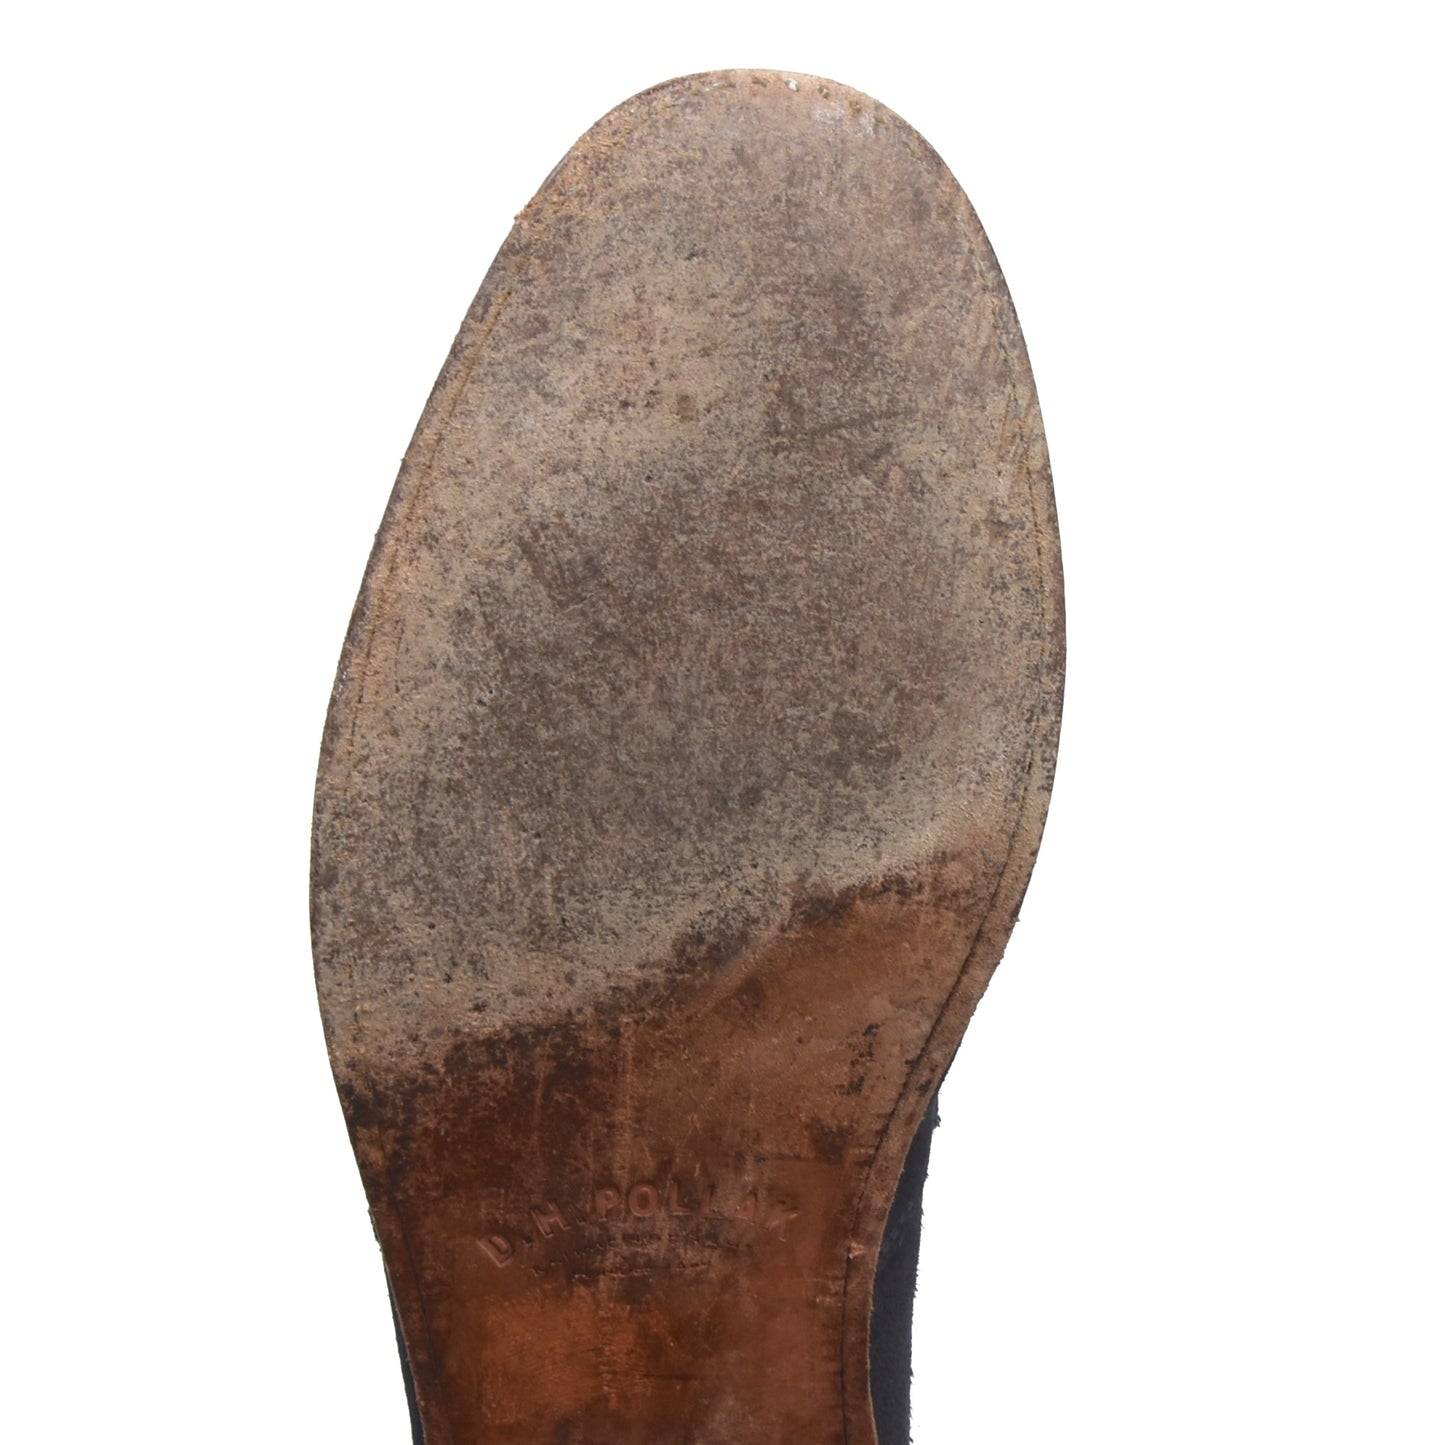 DH Pollak Suede Loafer Größe 11 - Marineblau